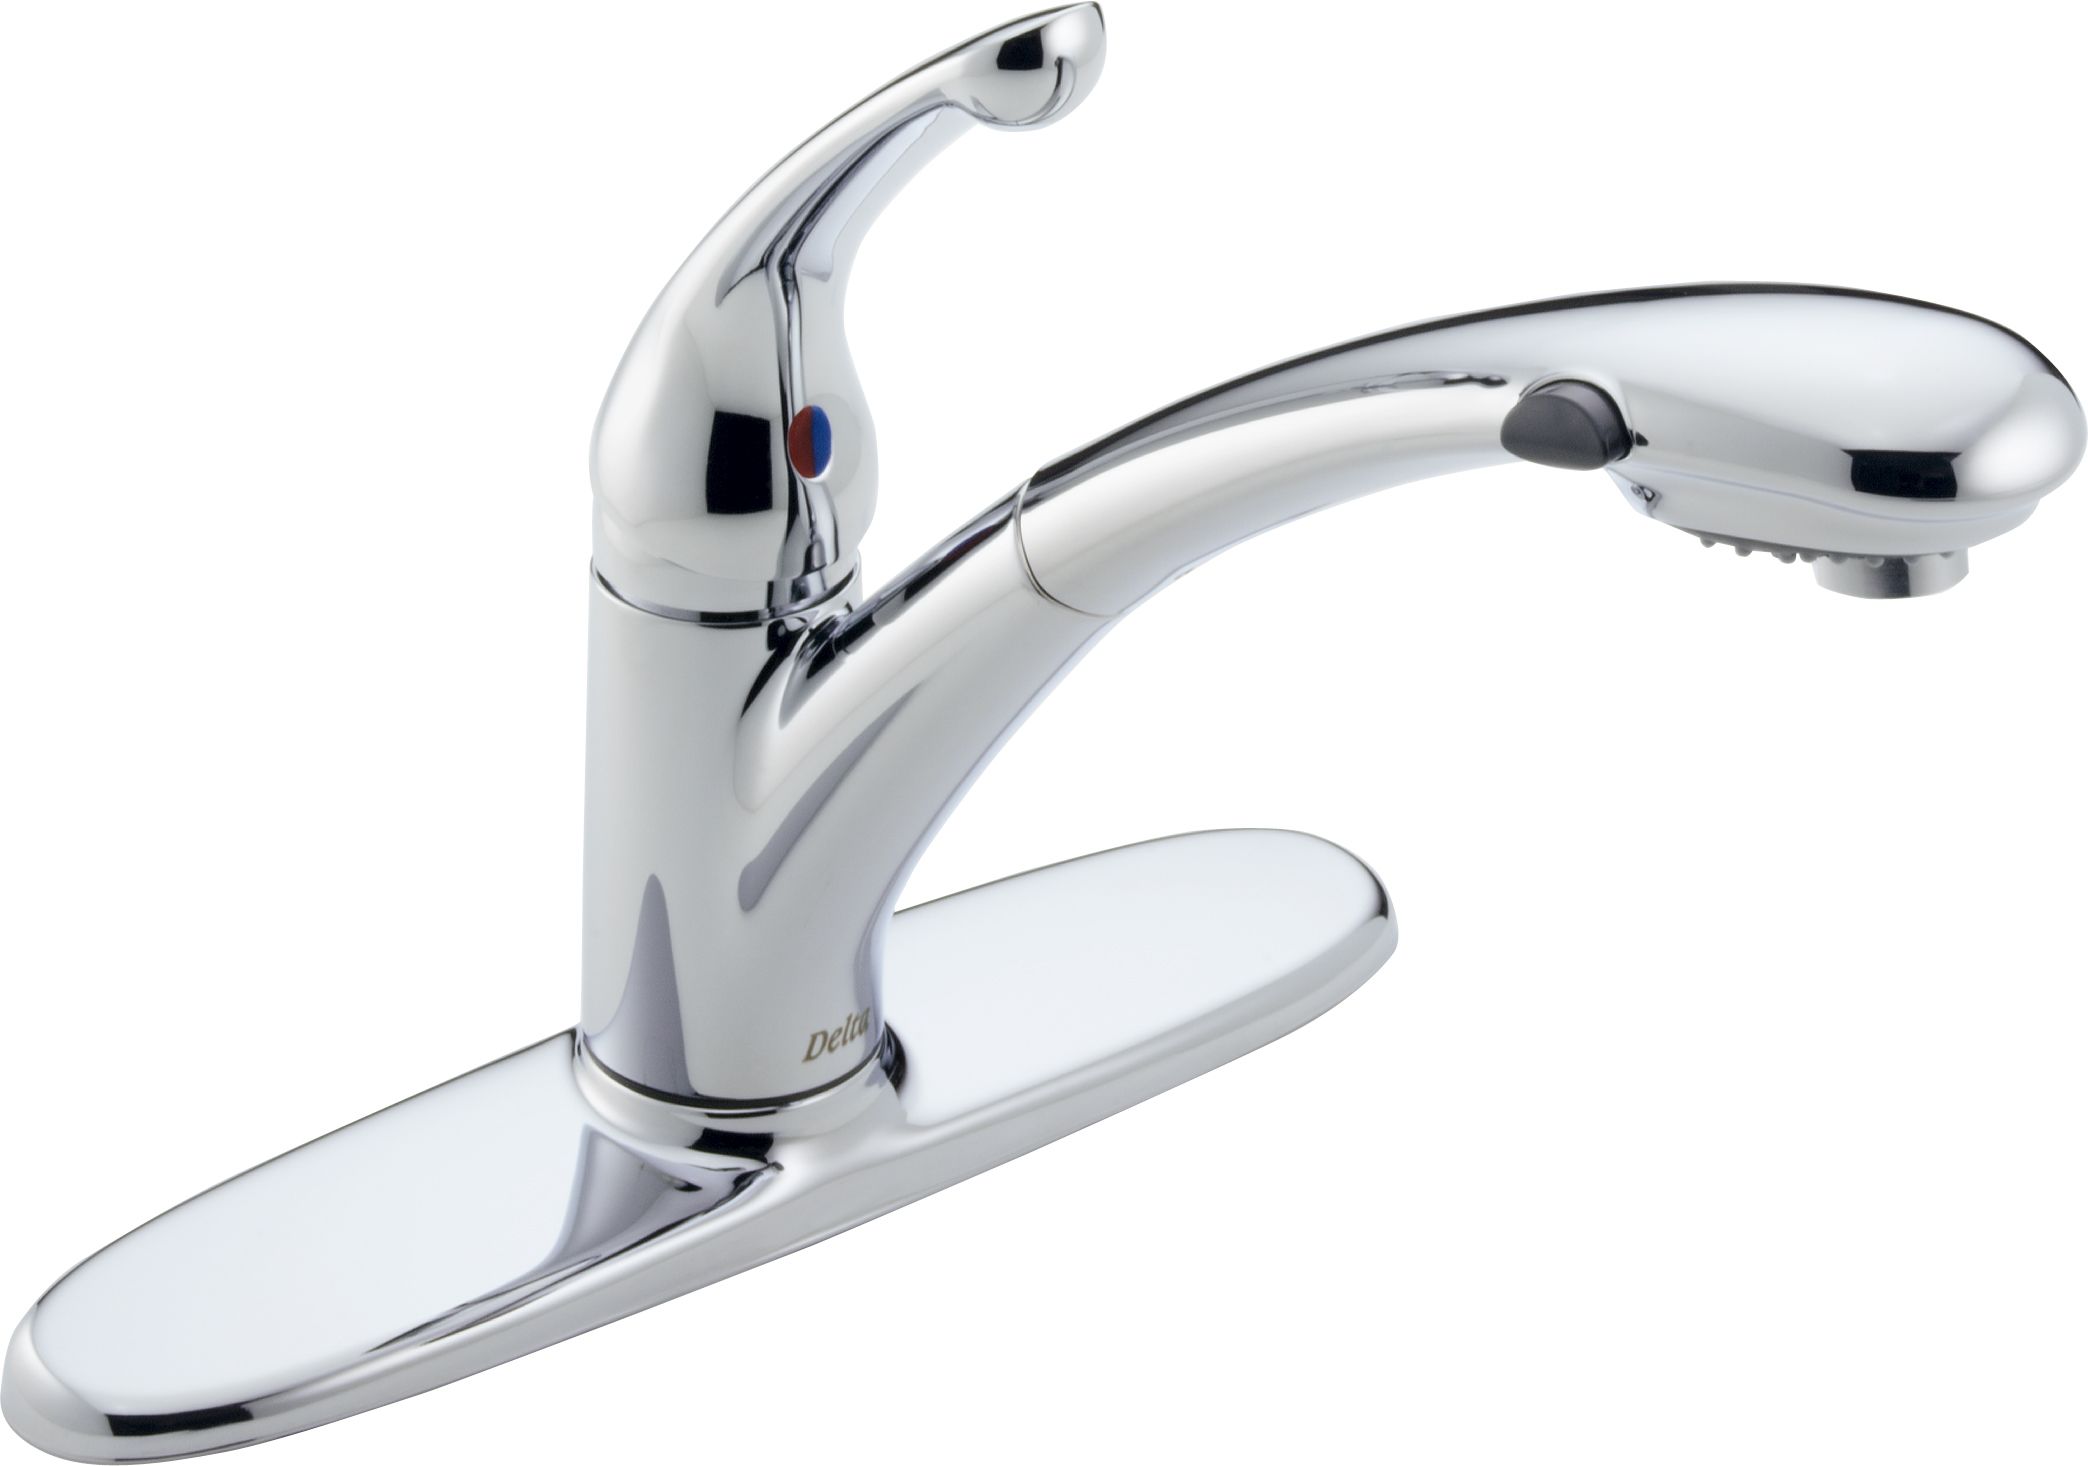 Delta 470 We Dst Chrome Signature Pull Out Kitchen Faucet Water Efficient Includes Lifetime Warranty Faucet Com